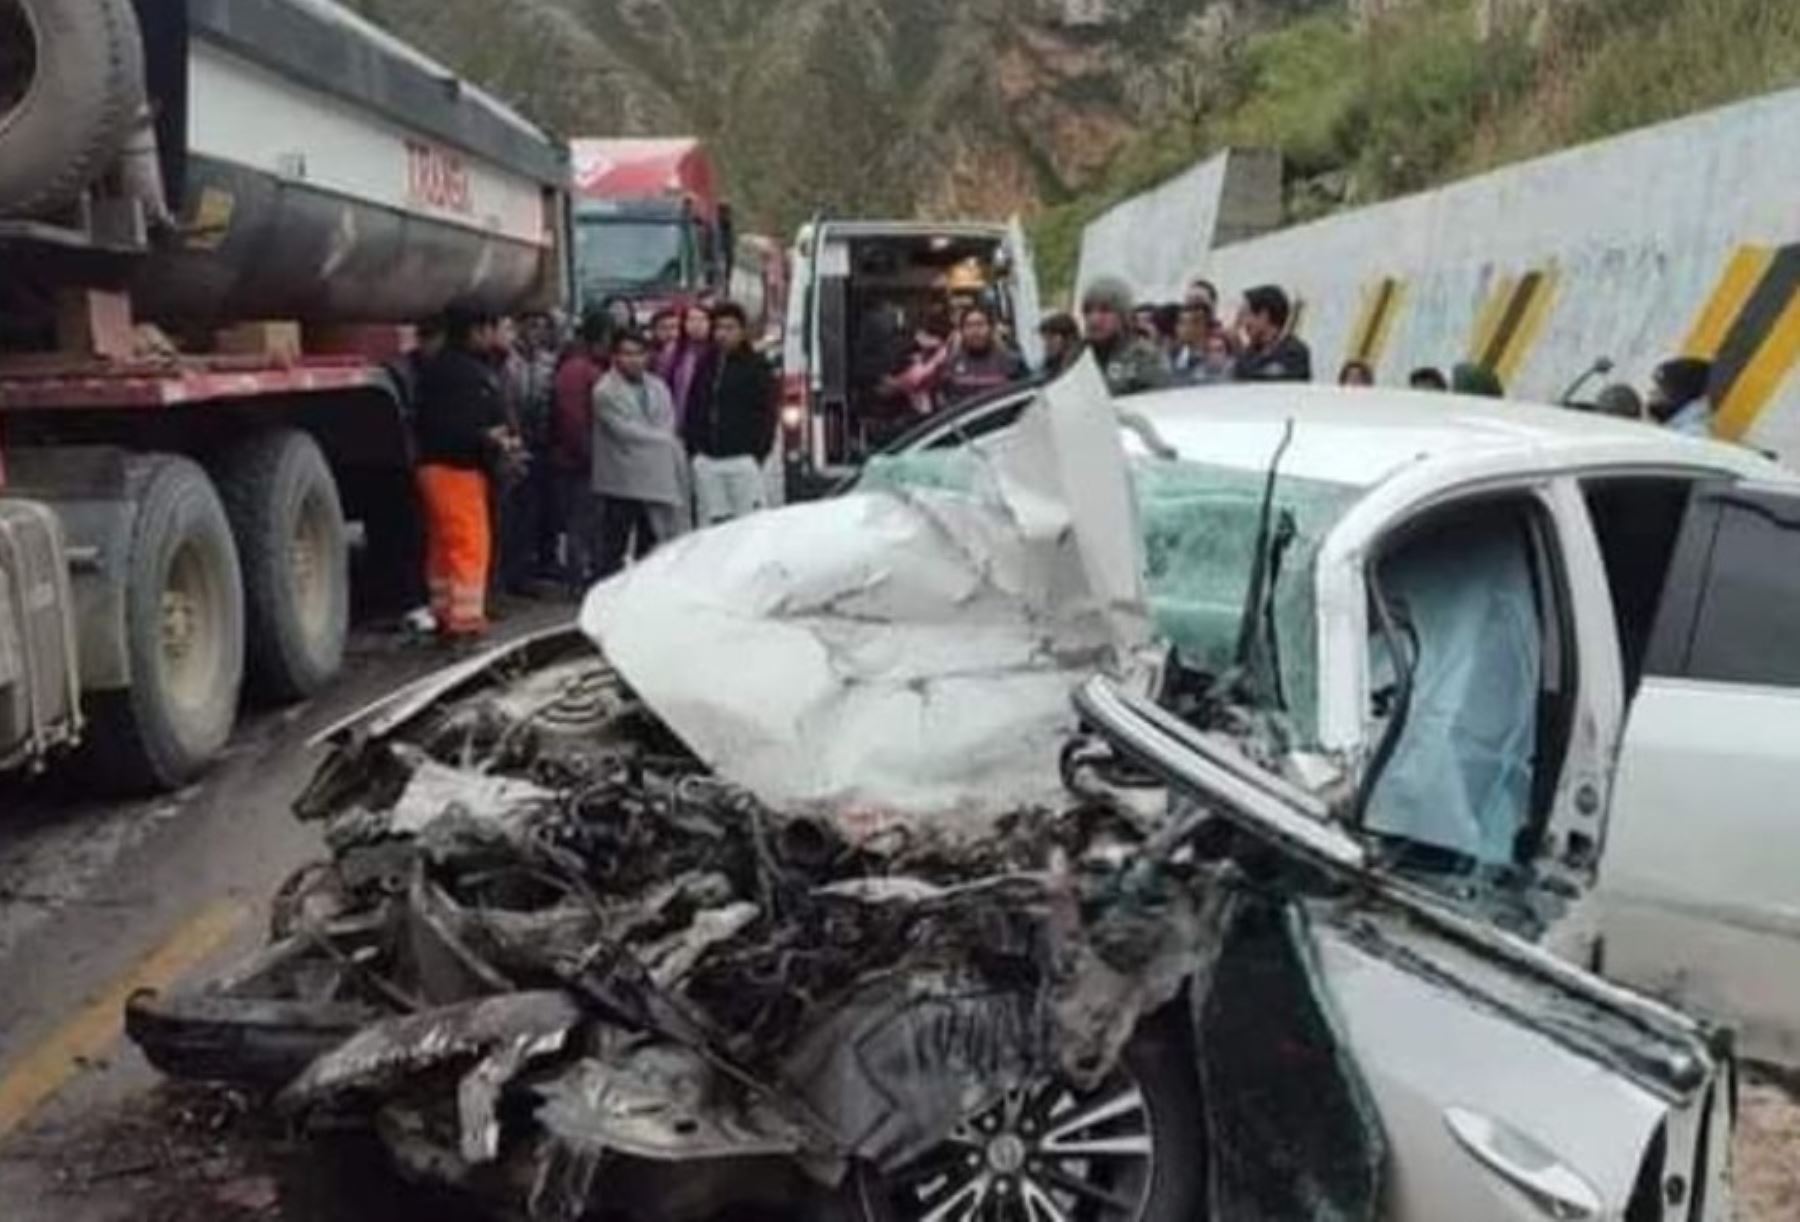 Dos personas perdieron la vida y otras dos resultaron heridas tras la colisión de un automóvil y un camión ocurrida esta madrugada en la carretera Central, en el tramo La Oroya-Jauja.